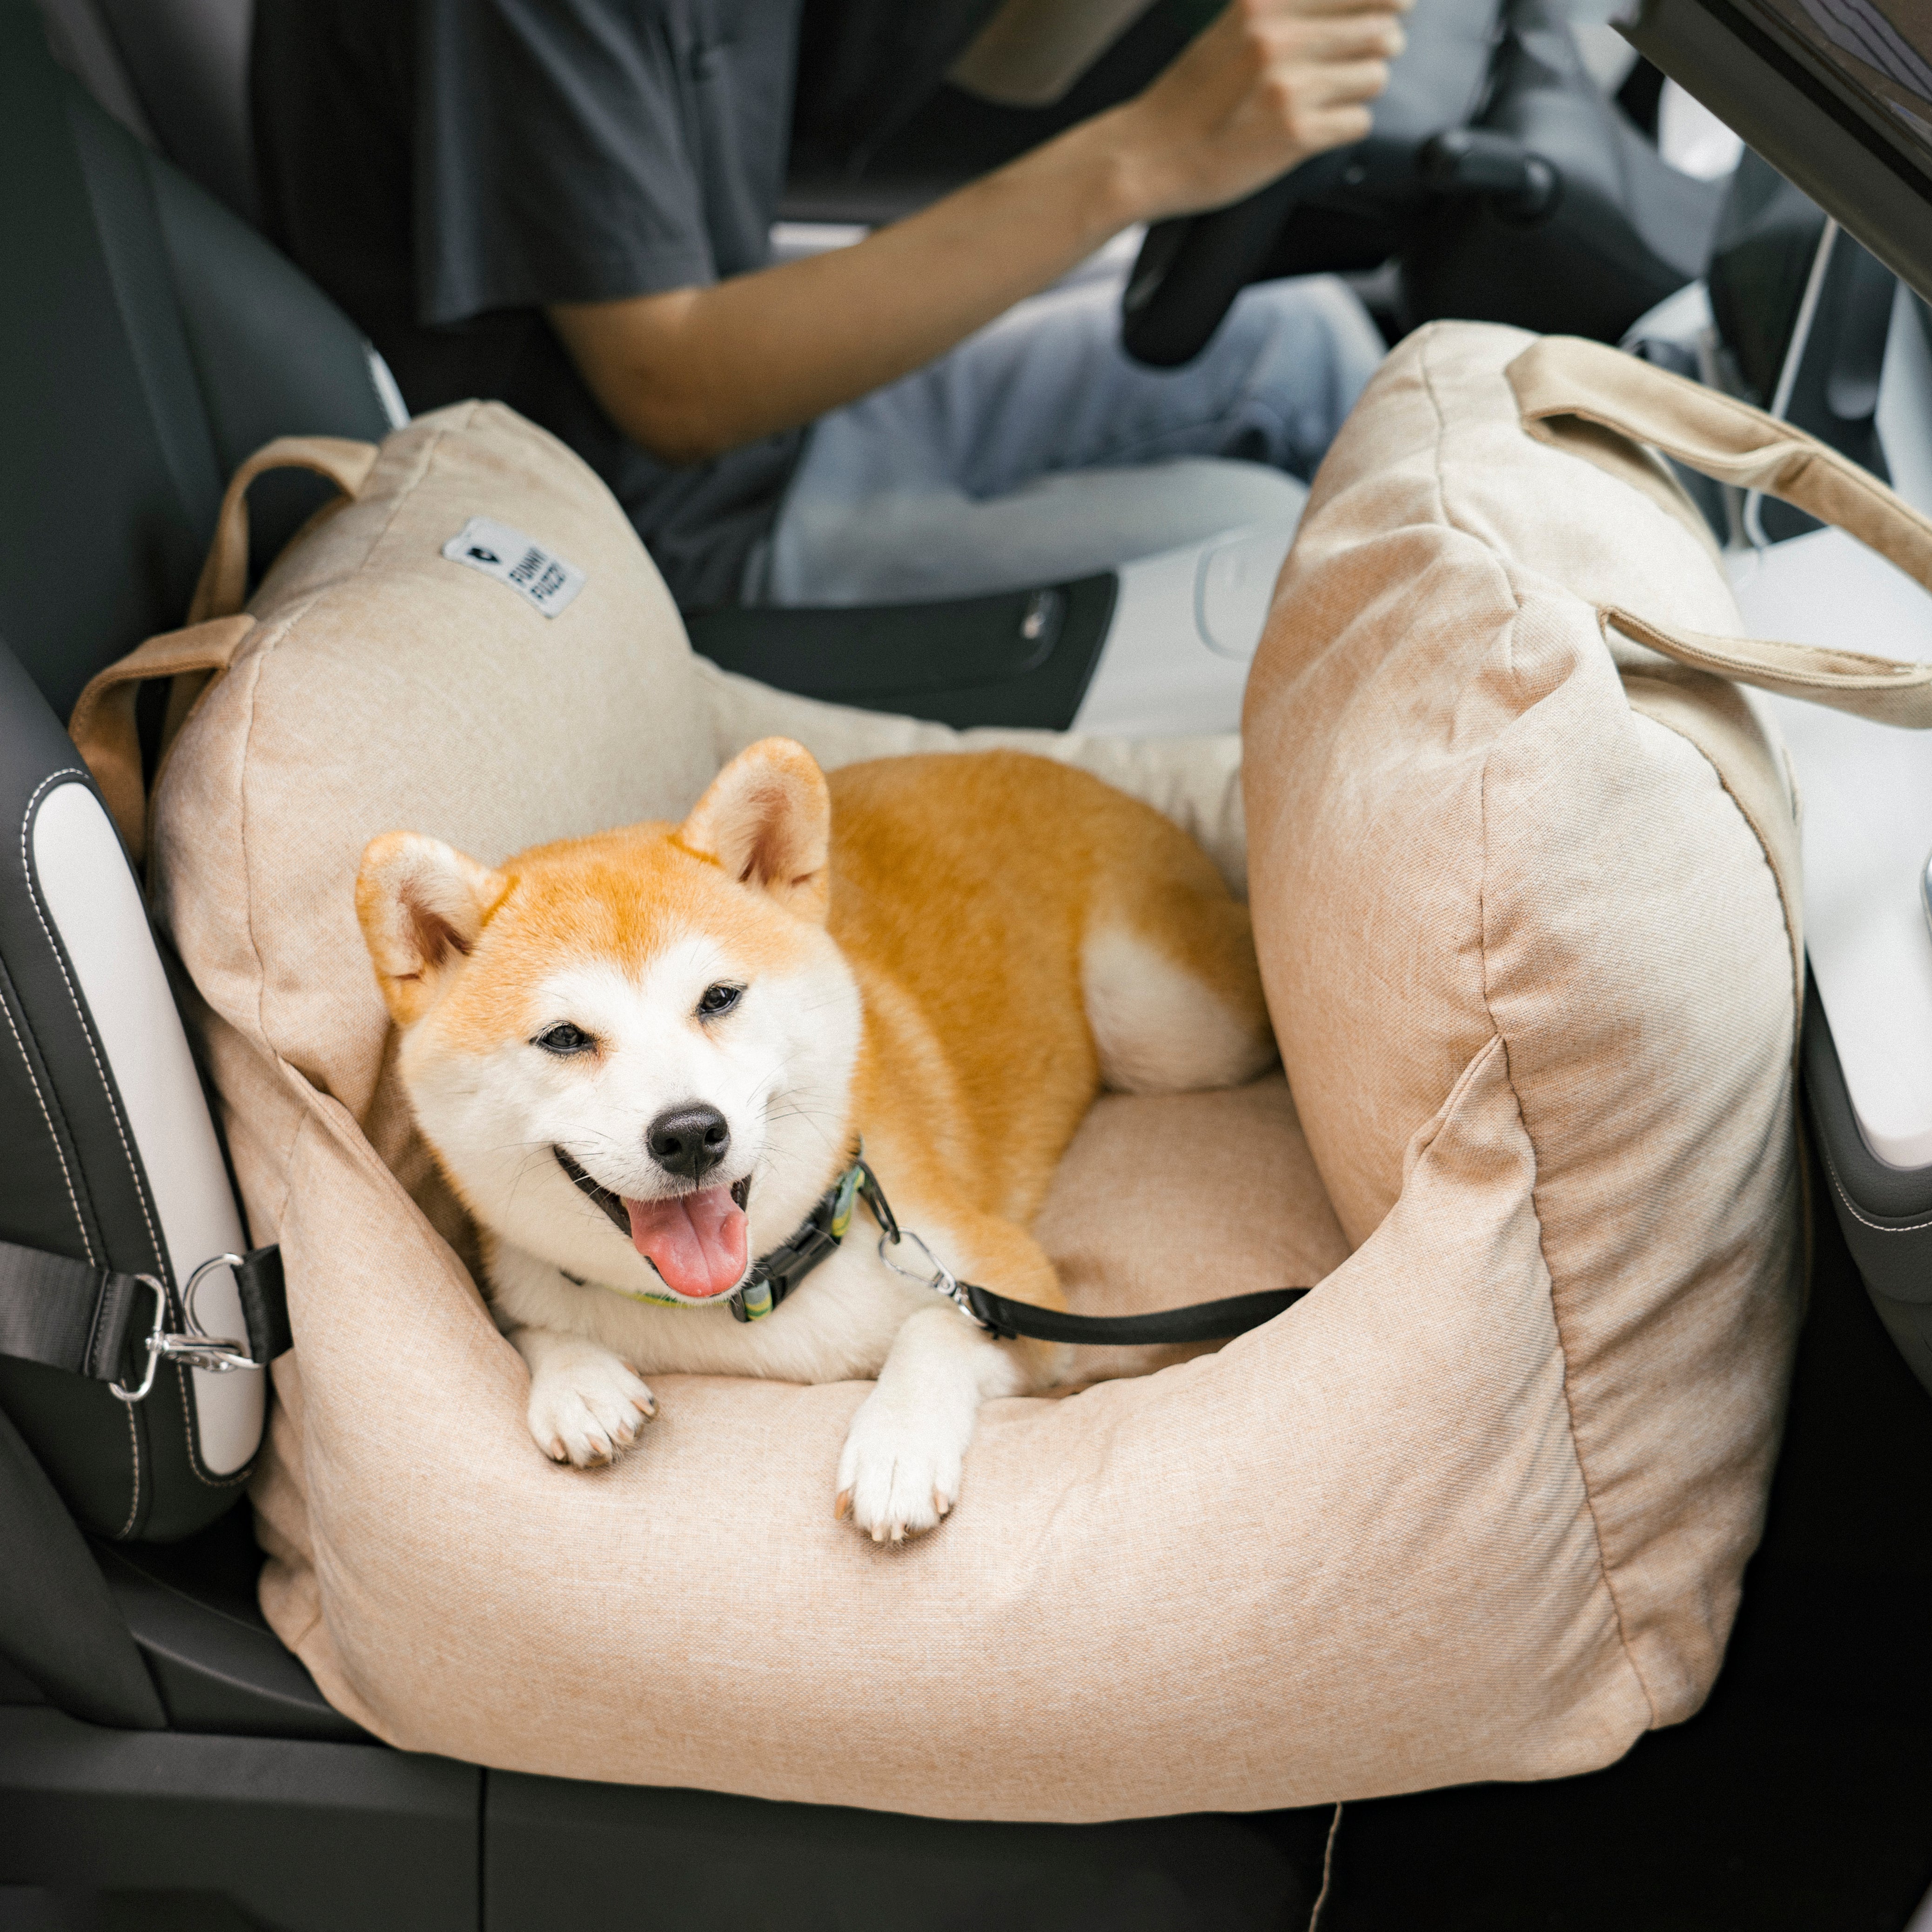 Letto per seggiolino auto per cani - Prima classe